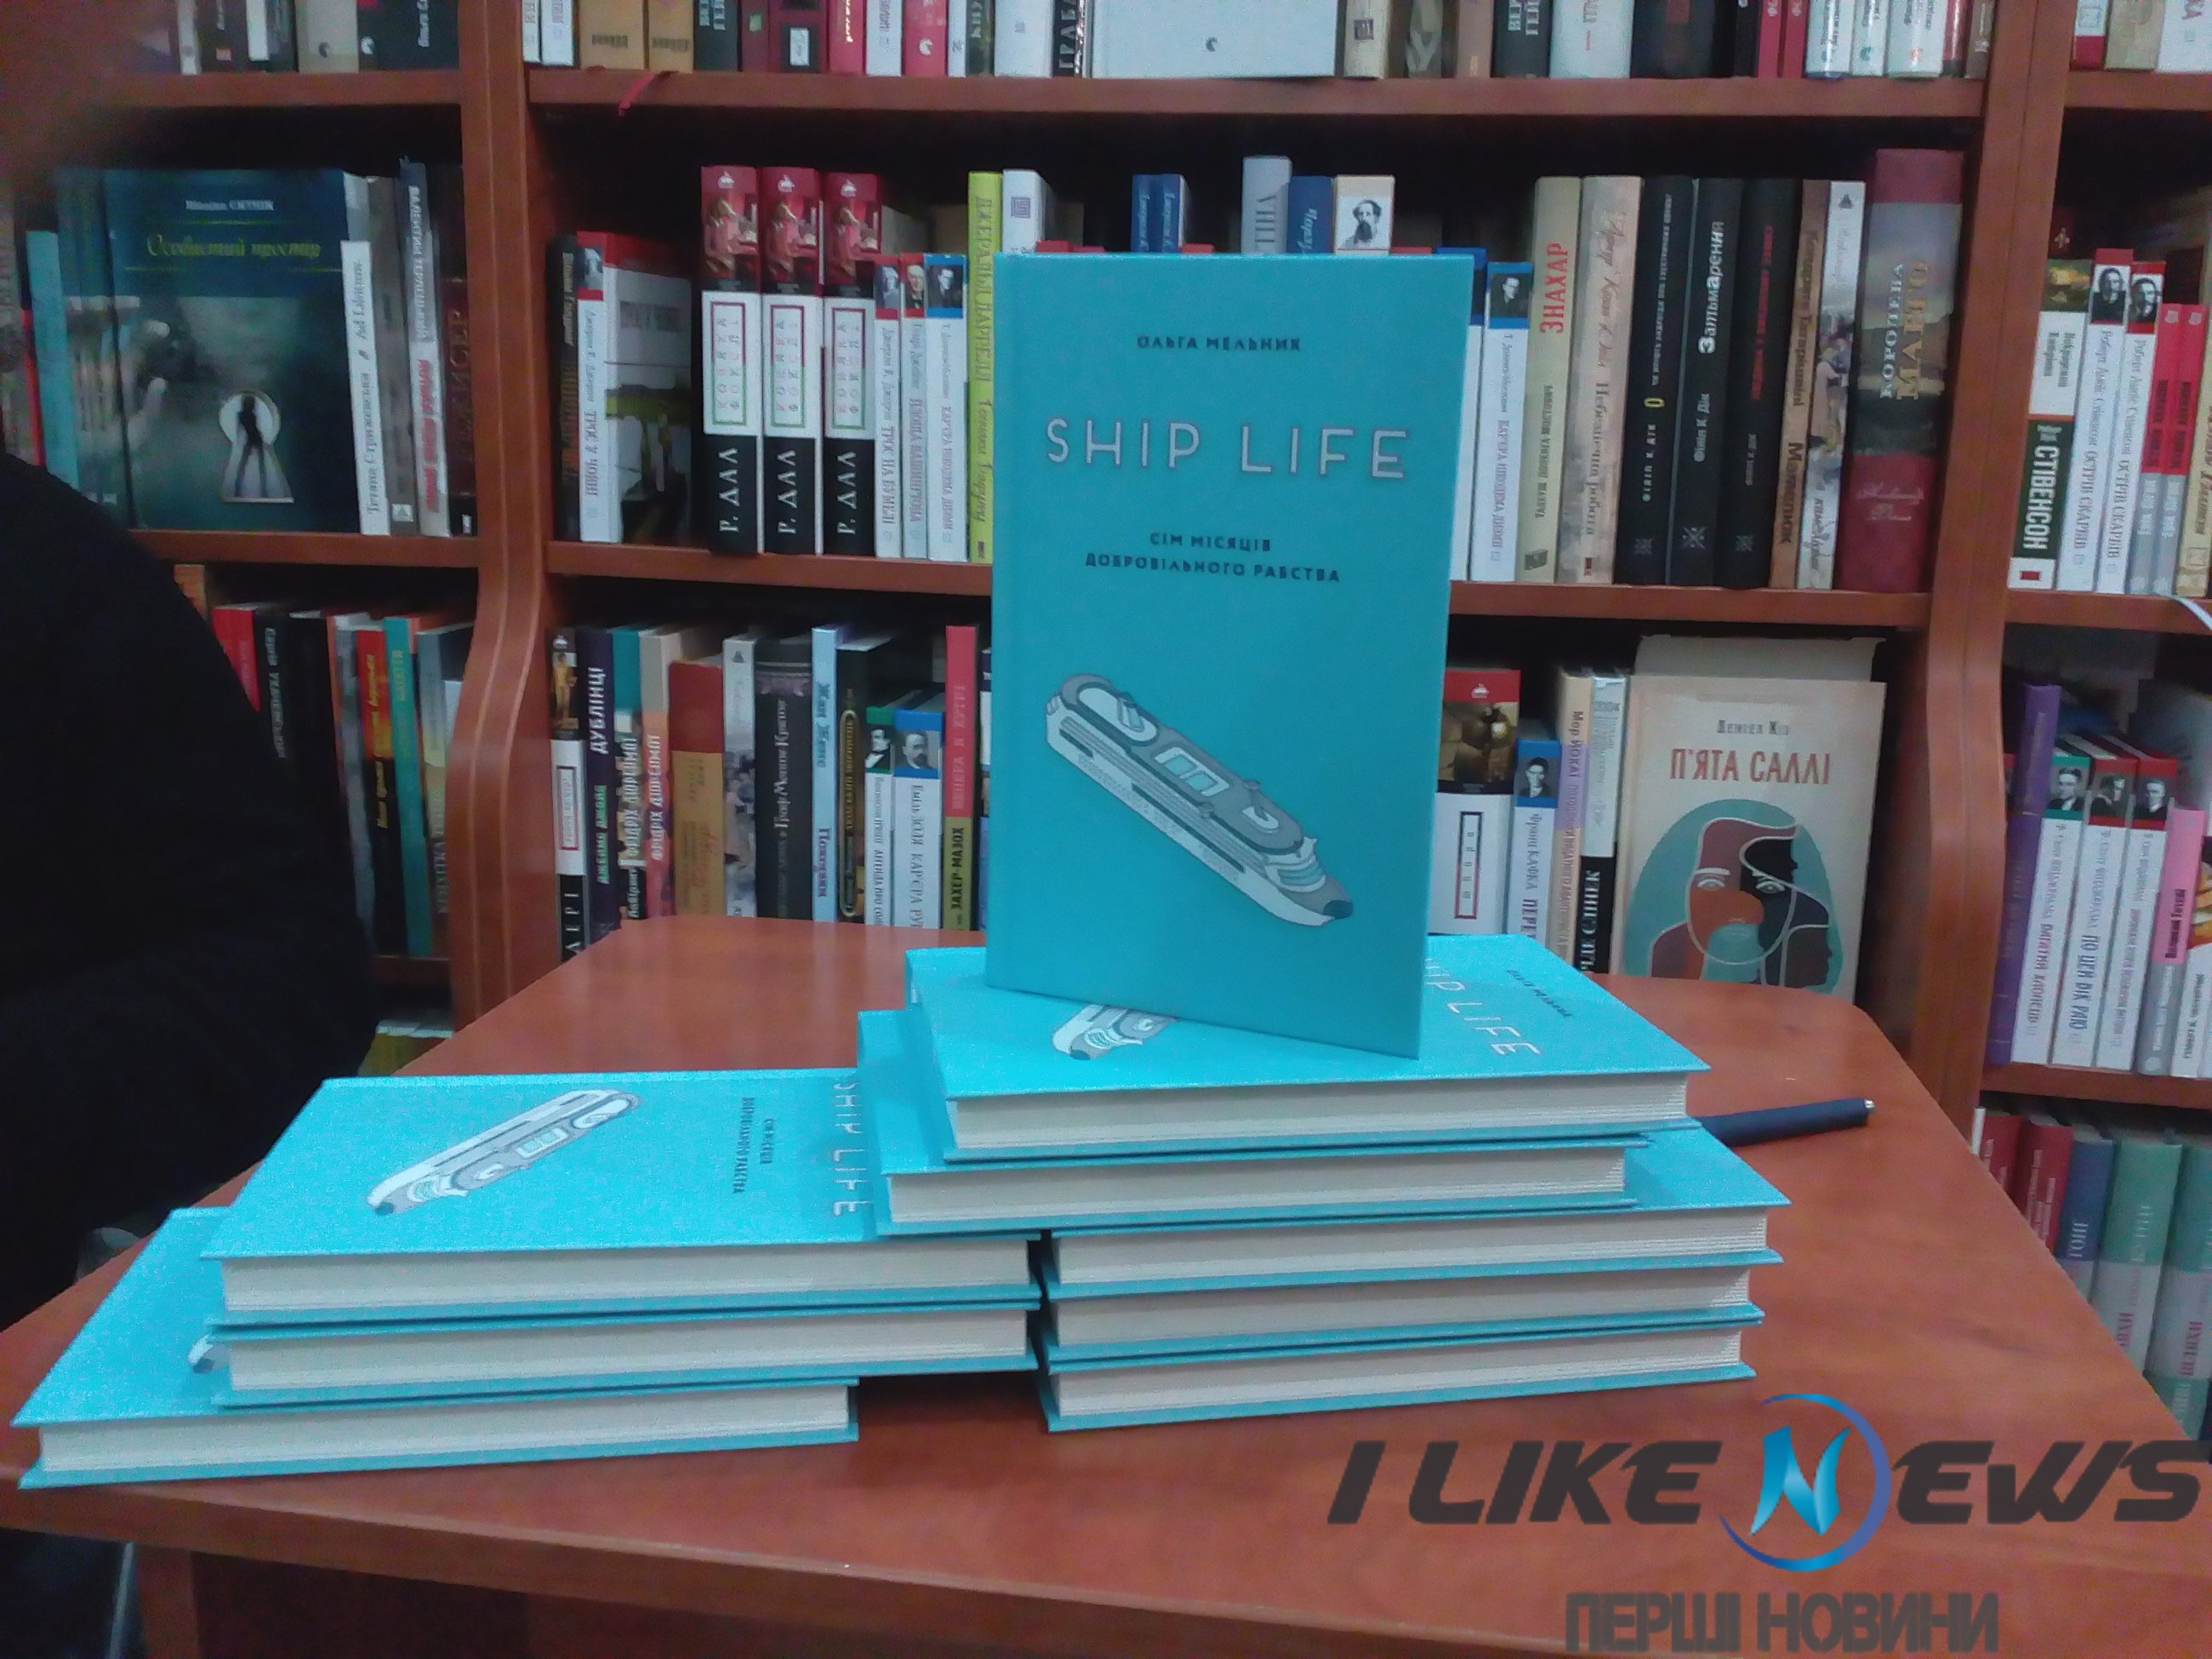 У Вінниці представили книгу про зворотний бік життя на круїзному лайнері